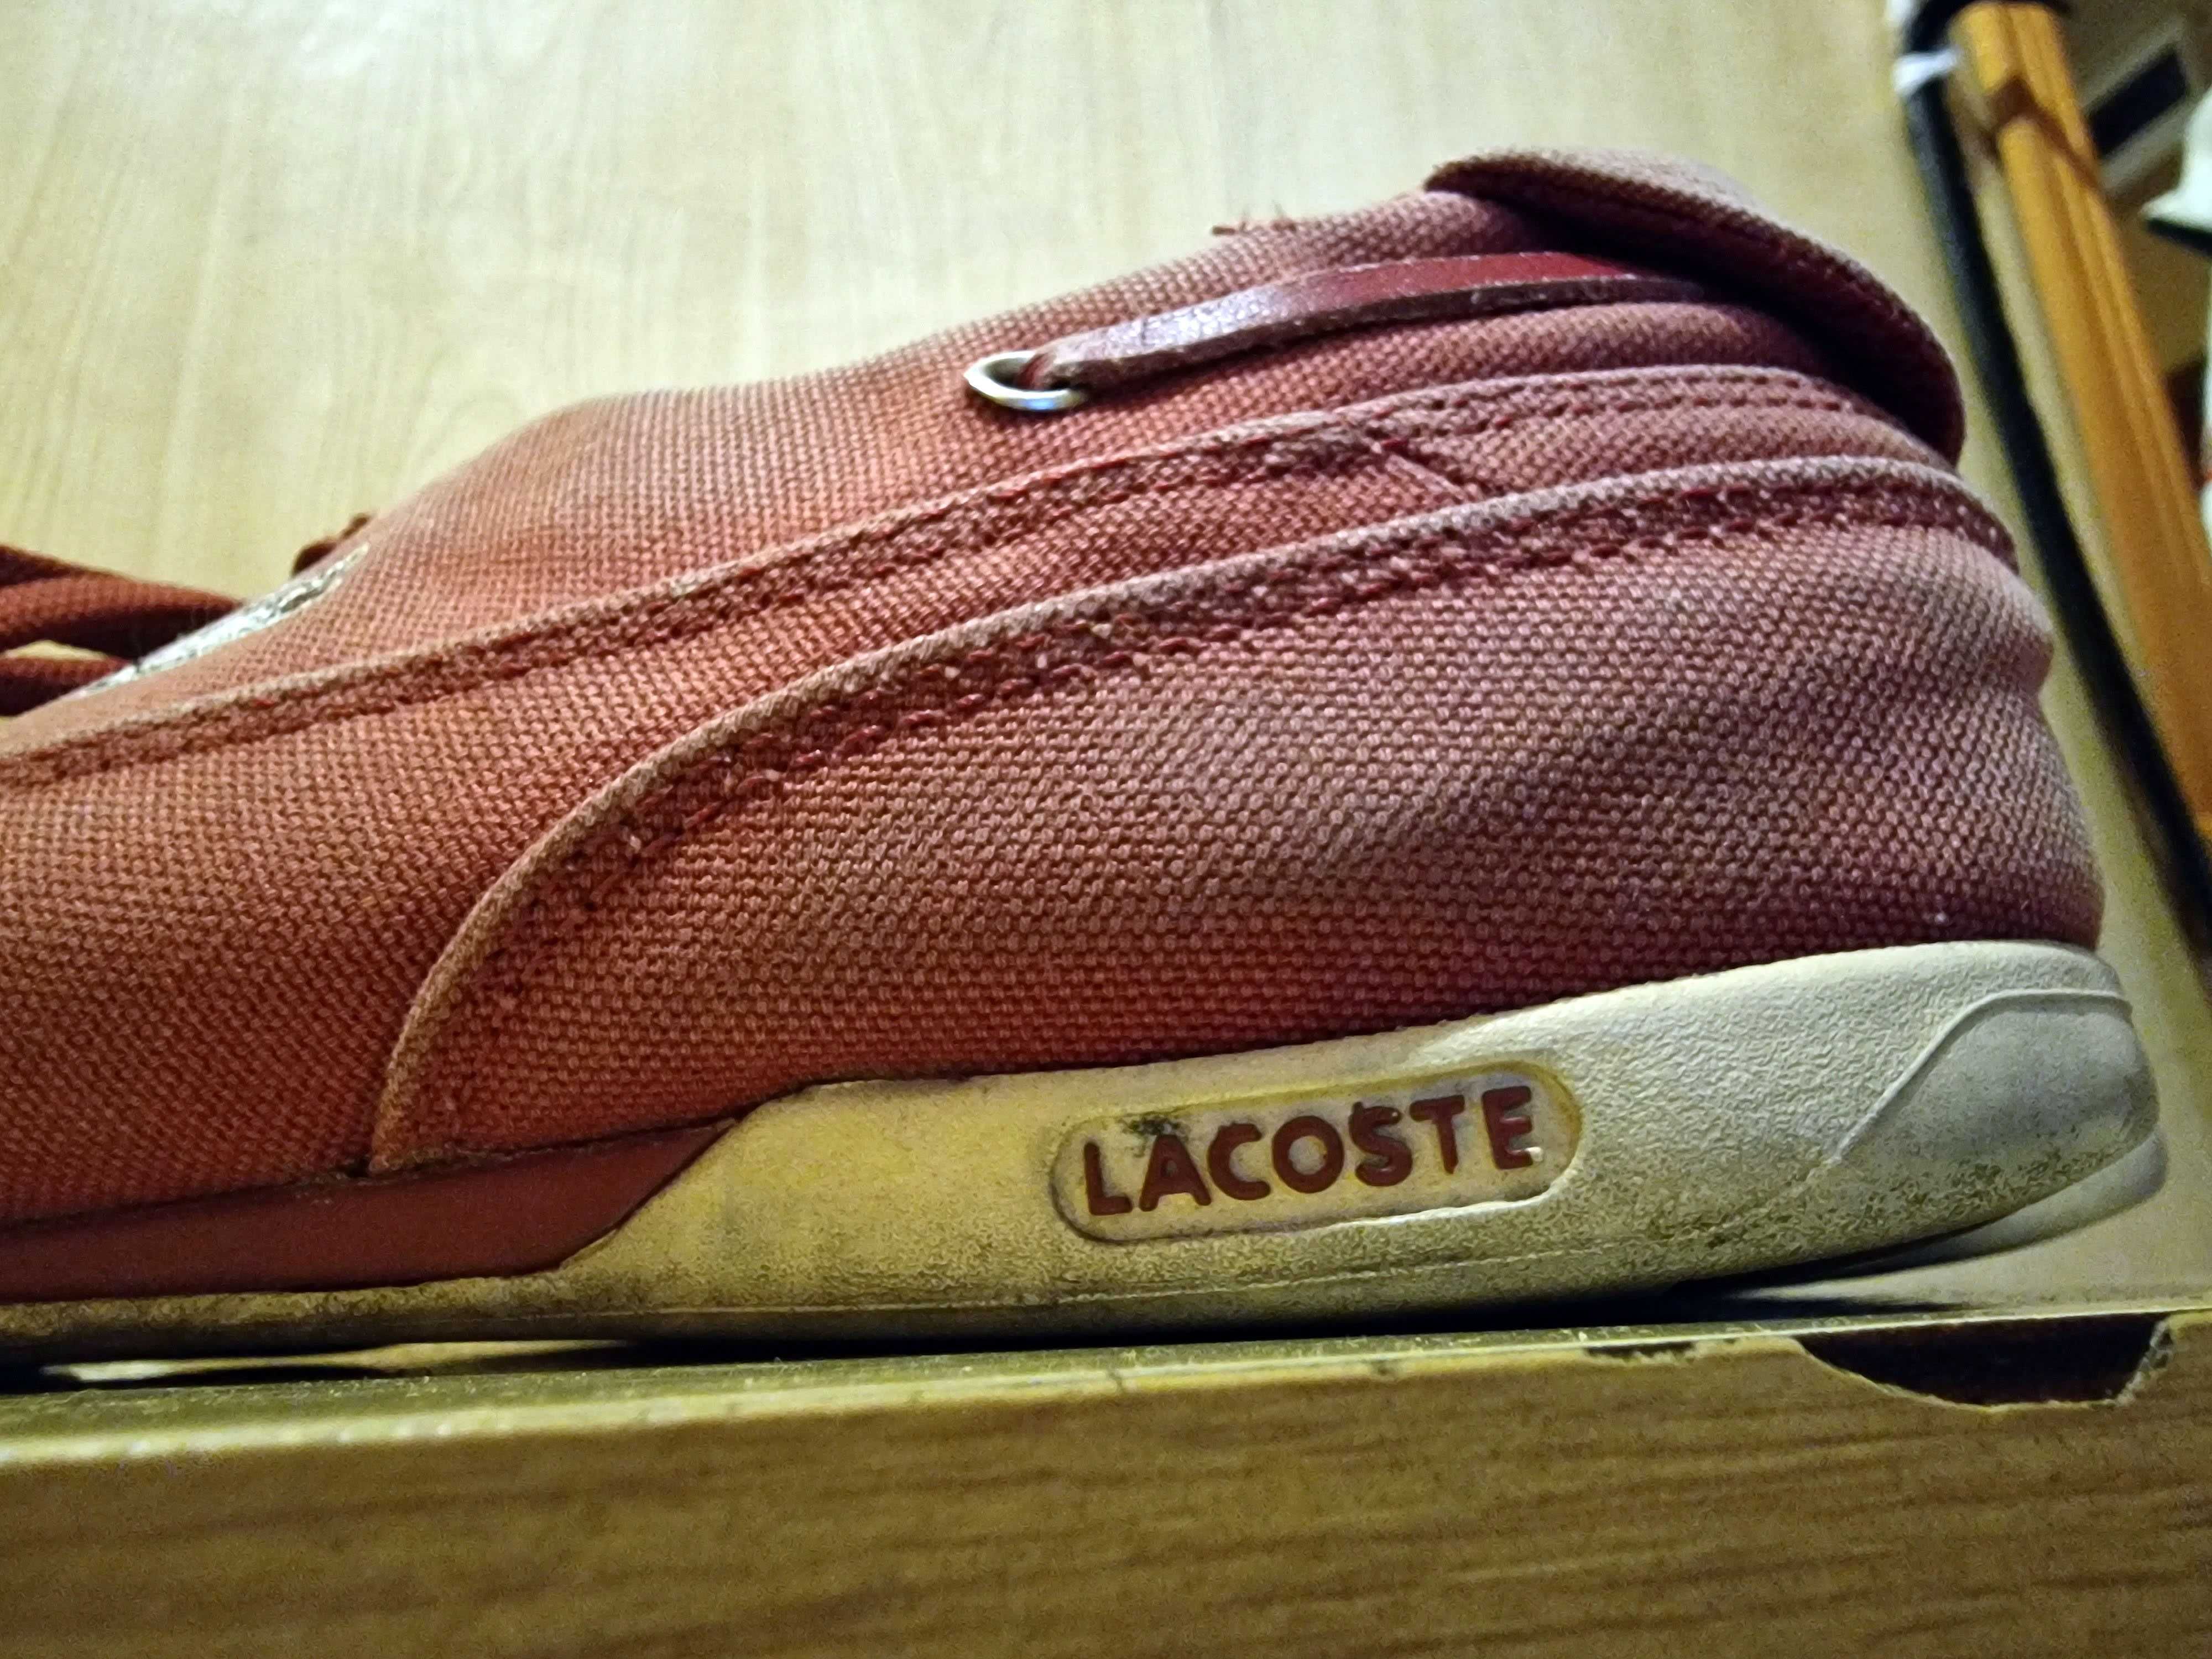 Buty Lacoste na lato 30zł 43 rozmiar logo dookoła buta